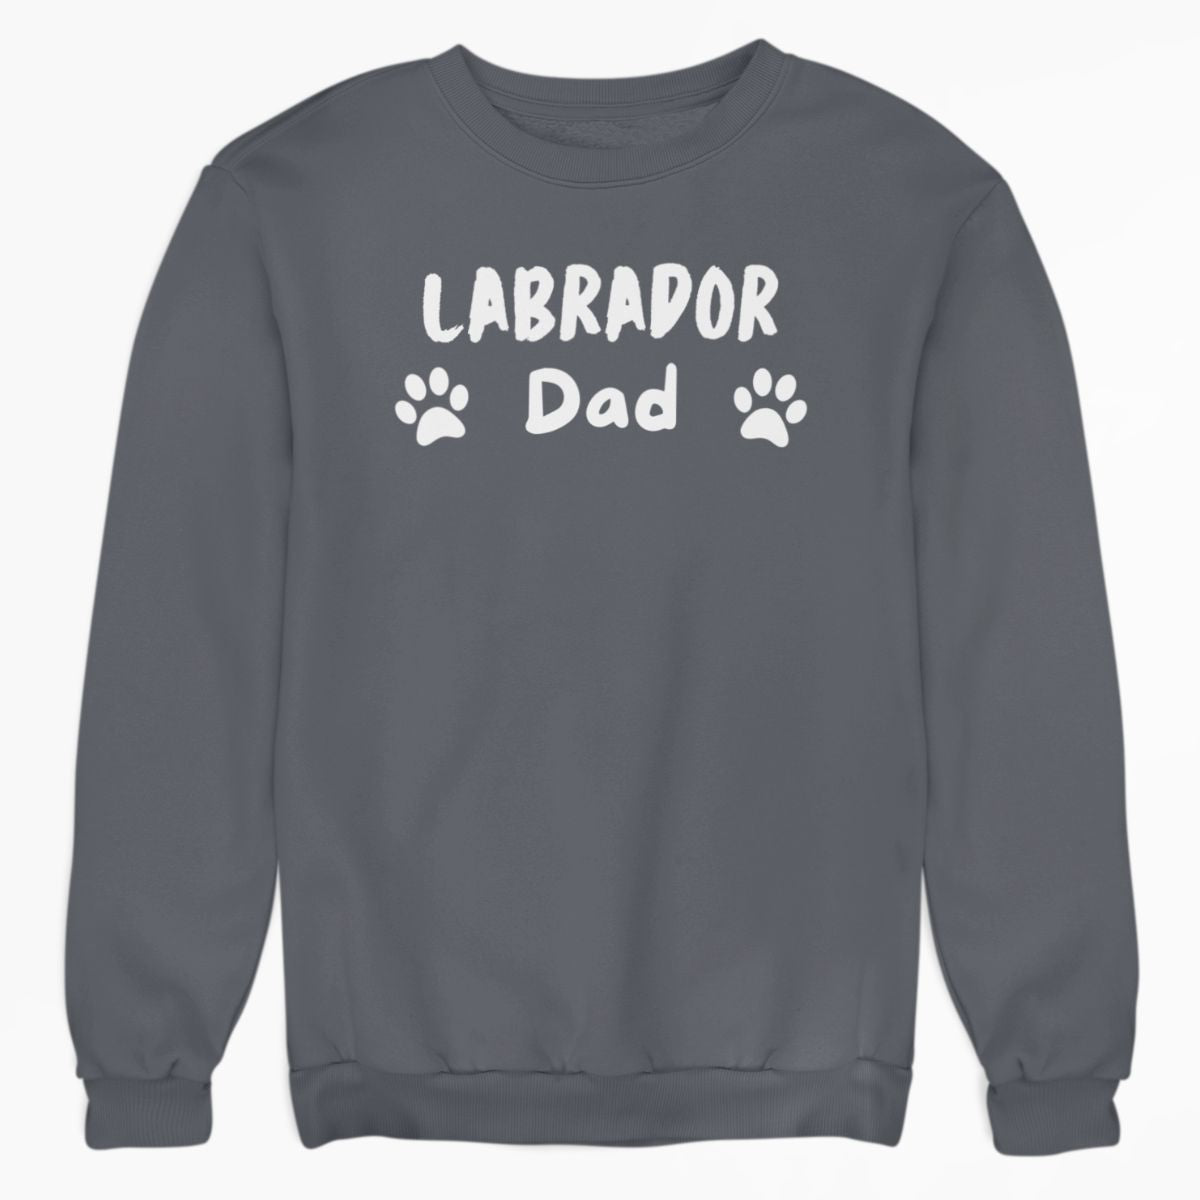 Labrador Dad Shirt